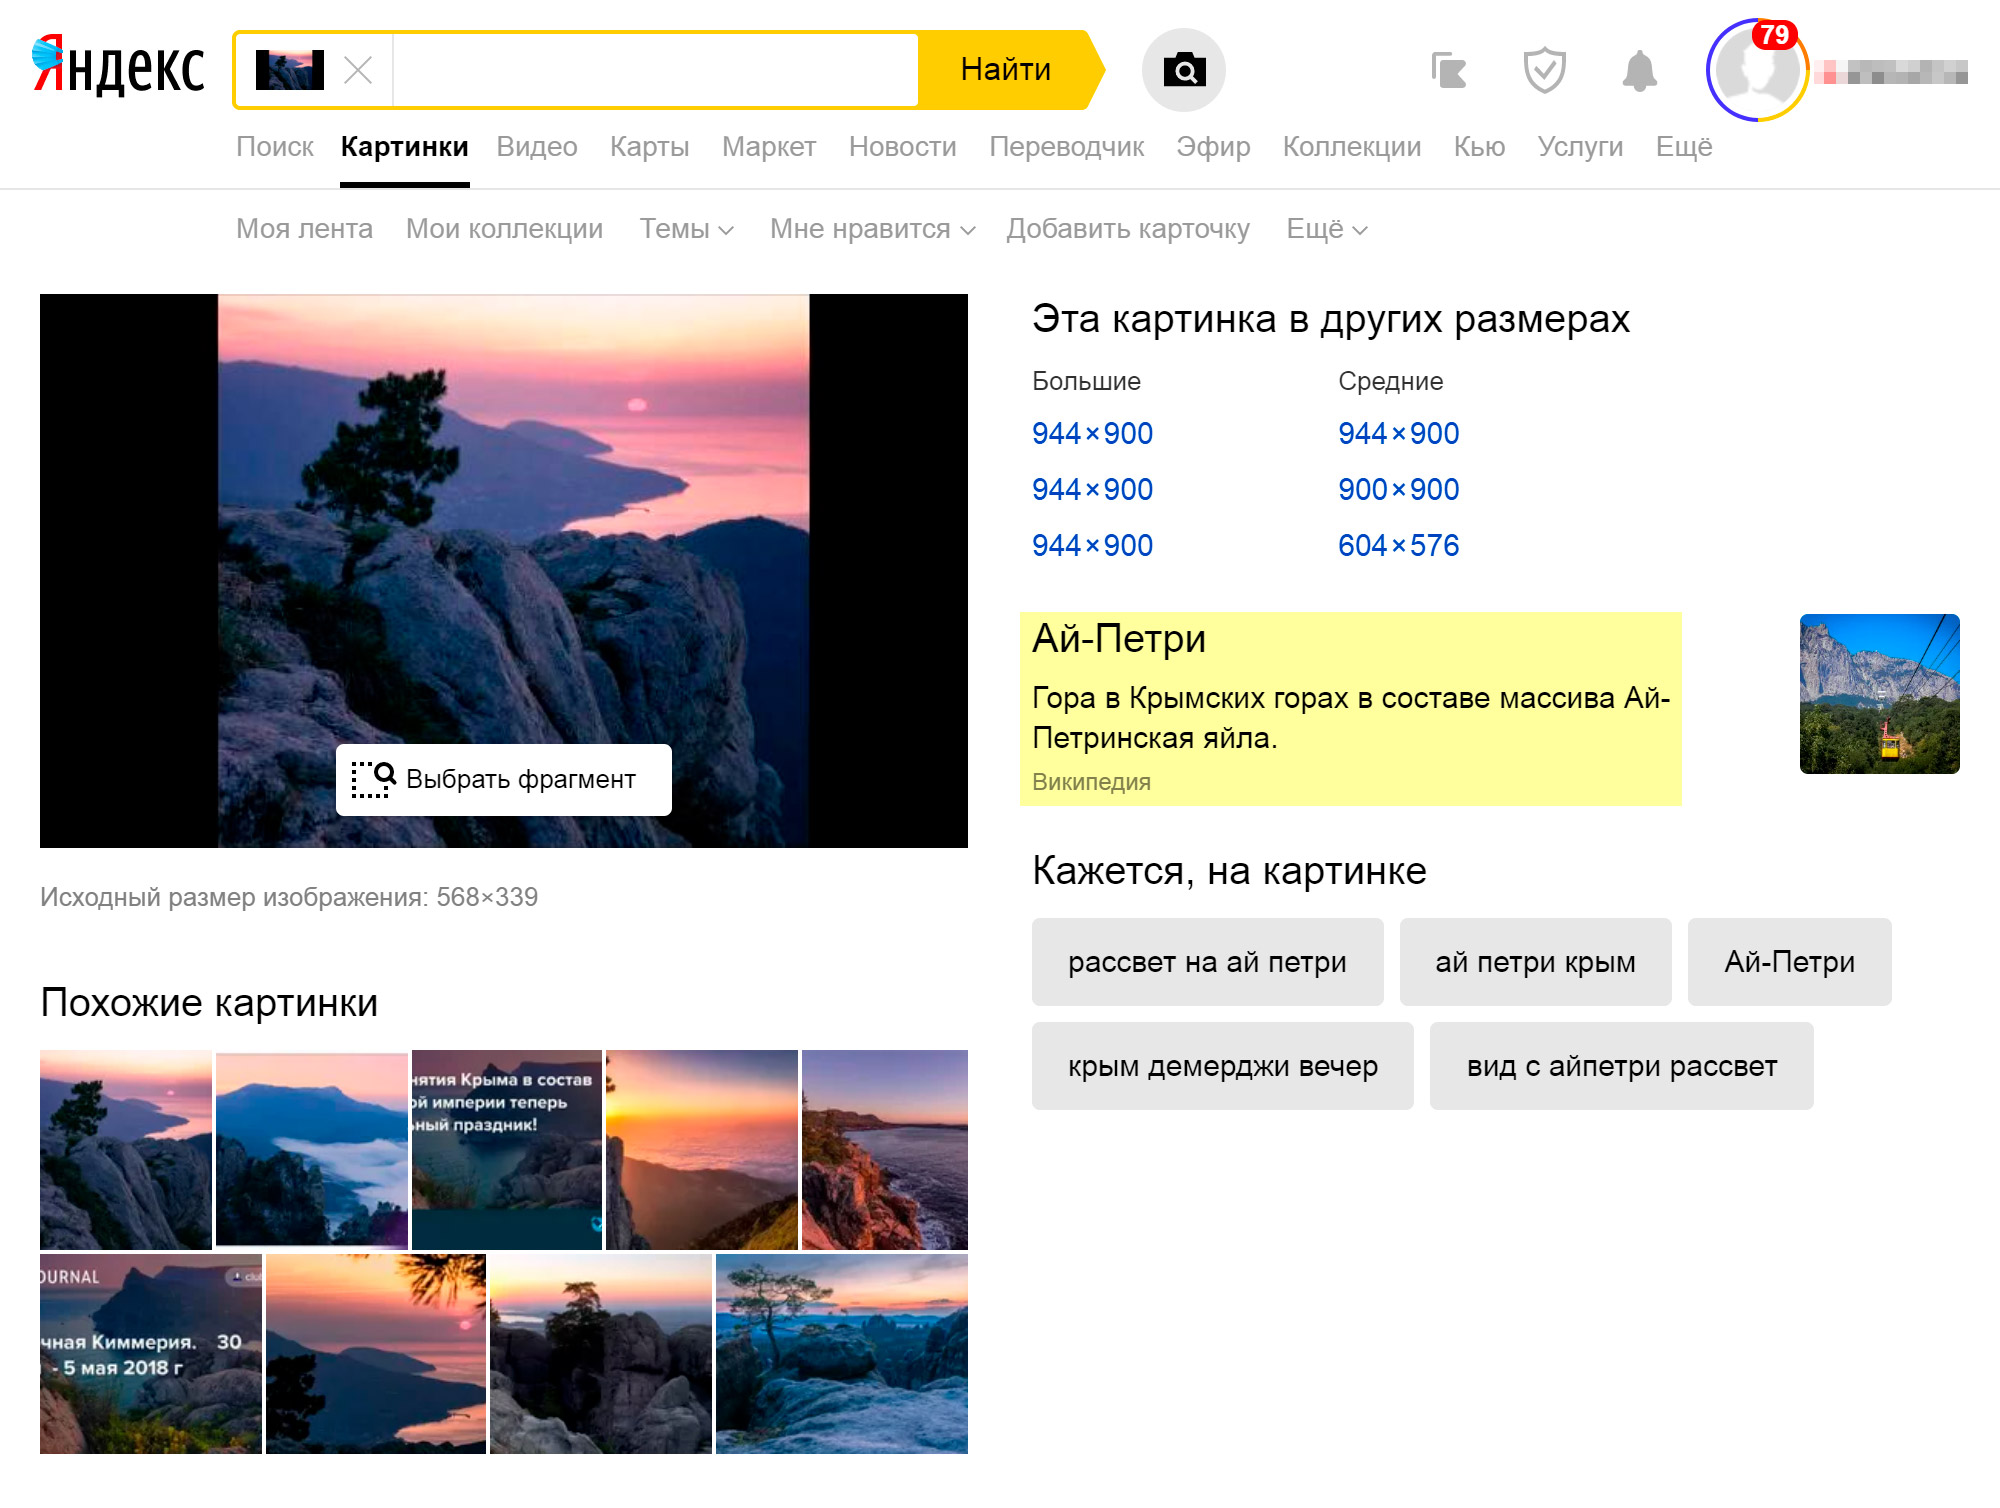 Яндекс сразу определил, что на этом фото гора Ай⁠-⁠Петри. Но были места, которые я долго не мог найти. Фото в соцсетях блогеров часто были сняты с неудачного ракурса, и Яндекс не находил похожие